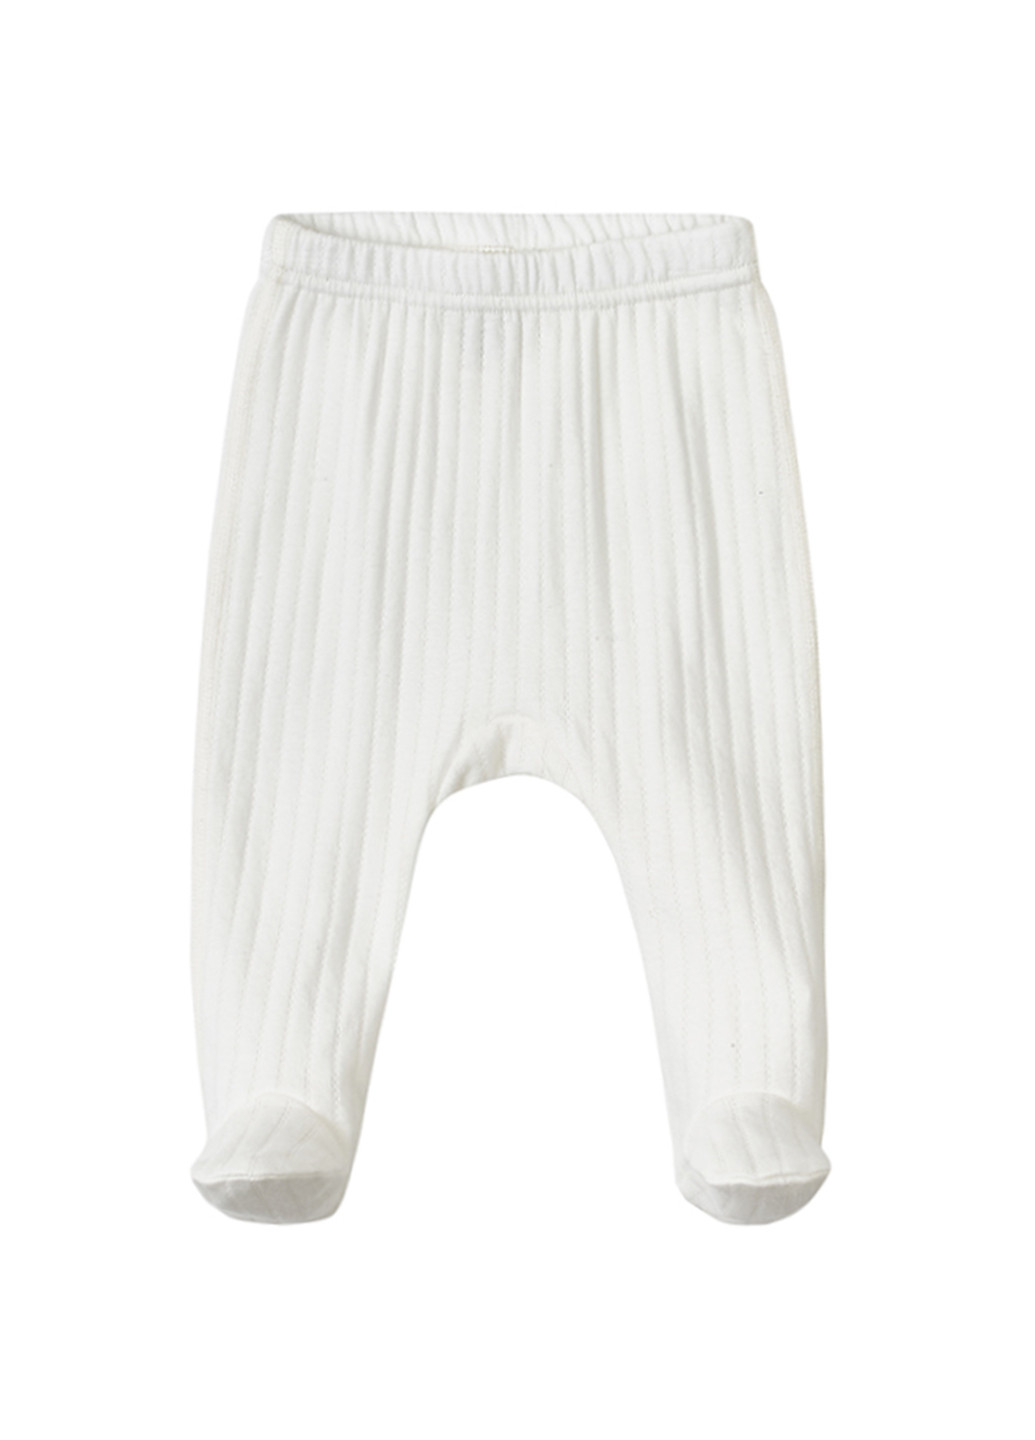 Белый демисезонный комплект для новорожденных белый "ажур" (боди, ползунки и шапочка-узелок) KRAKO